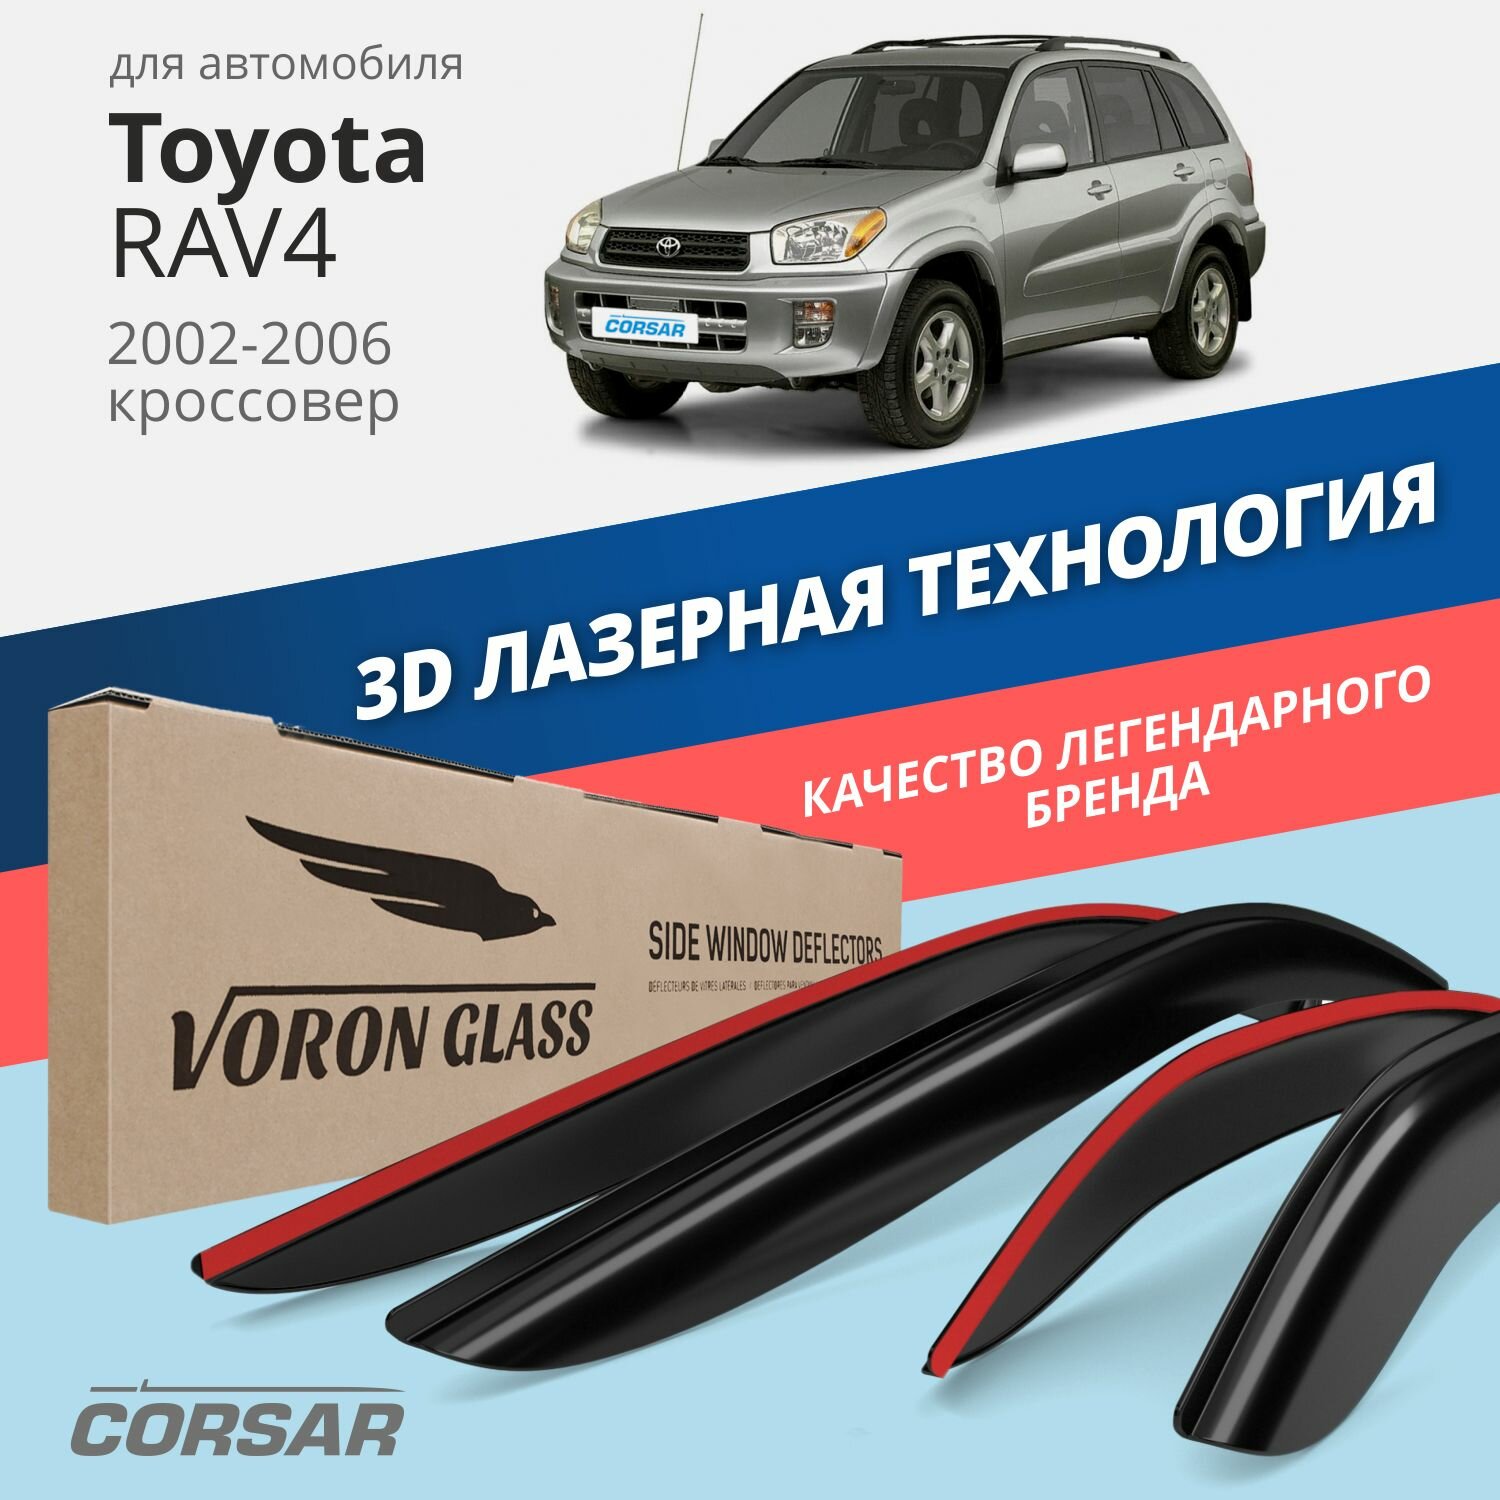 Дефлекторы окон Voron Glass серия Corsar для Toyota RAV4 II 2002-2006 накладные 4 шт.